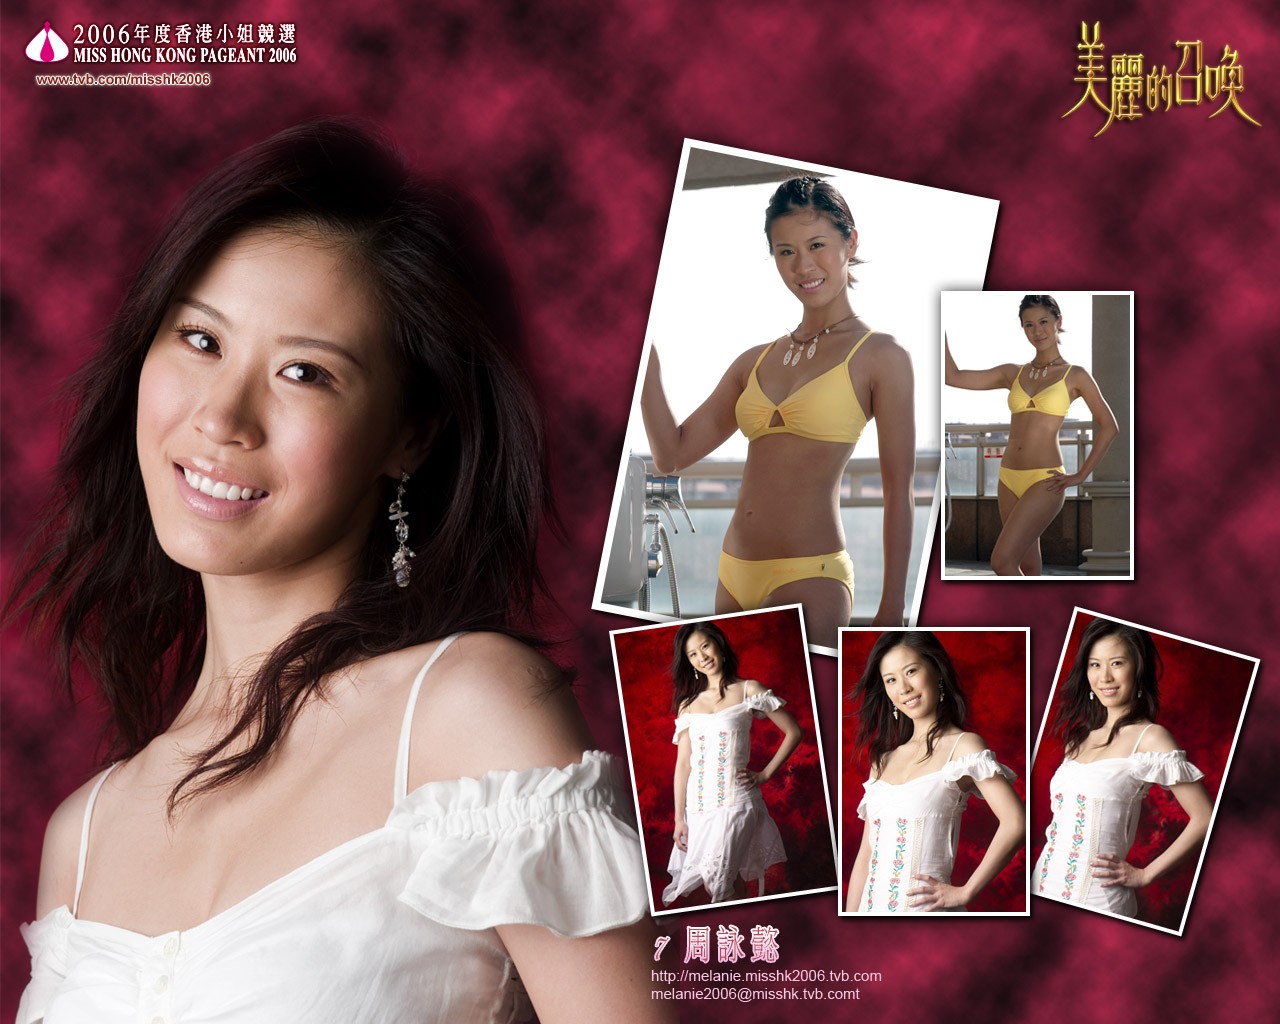 Miss Hong Kong 2006 Album #10 - 1280x1024